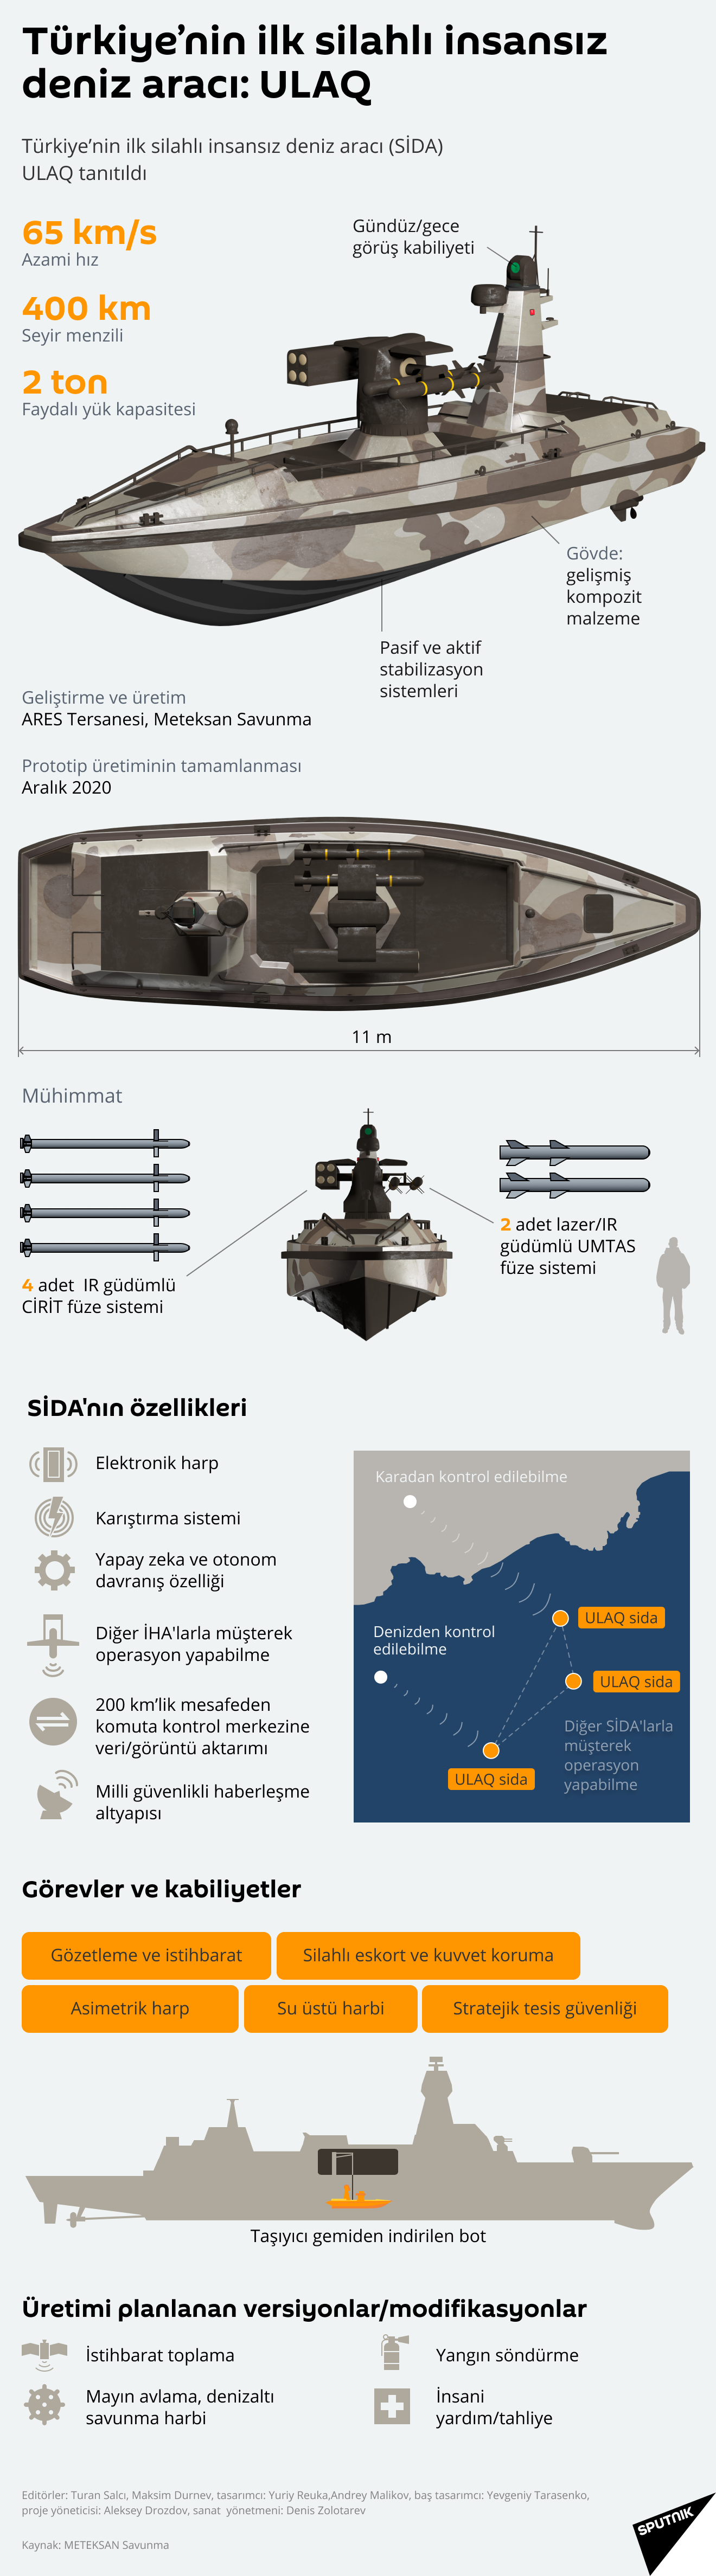 İnfografik - Sputnik Türkiye